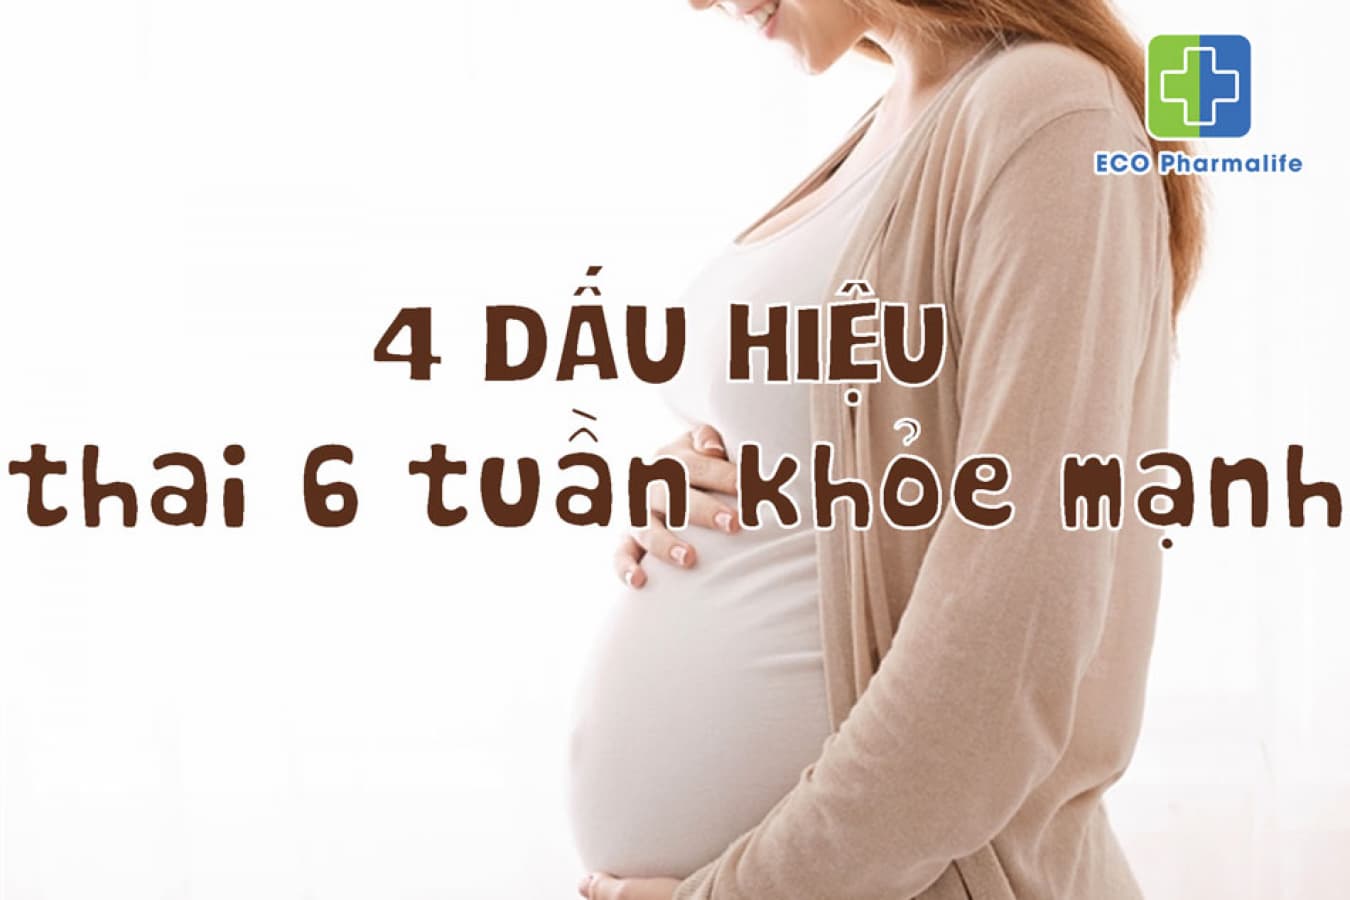 4 Dấu hiệu thai 6 tuần khỏe mạnh - Mẹ có biết?